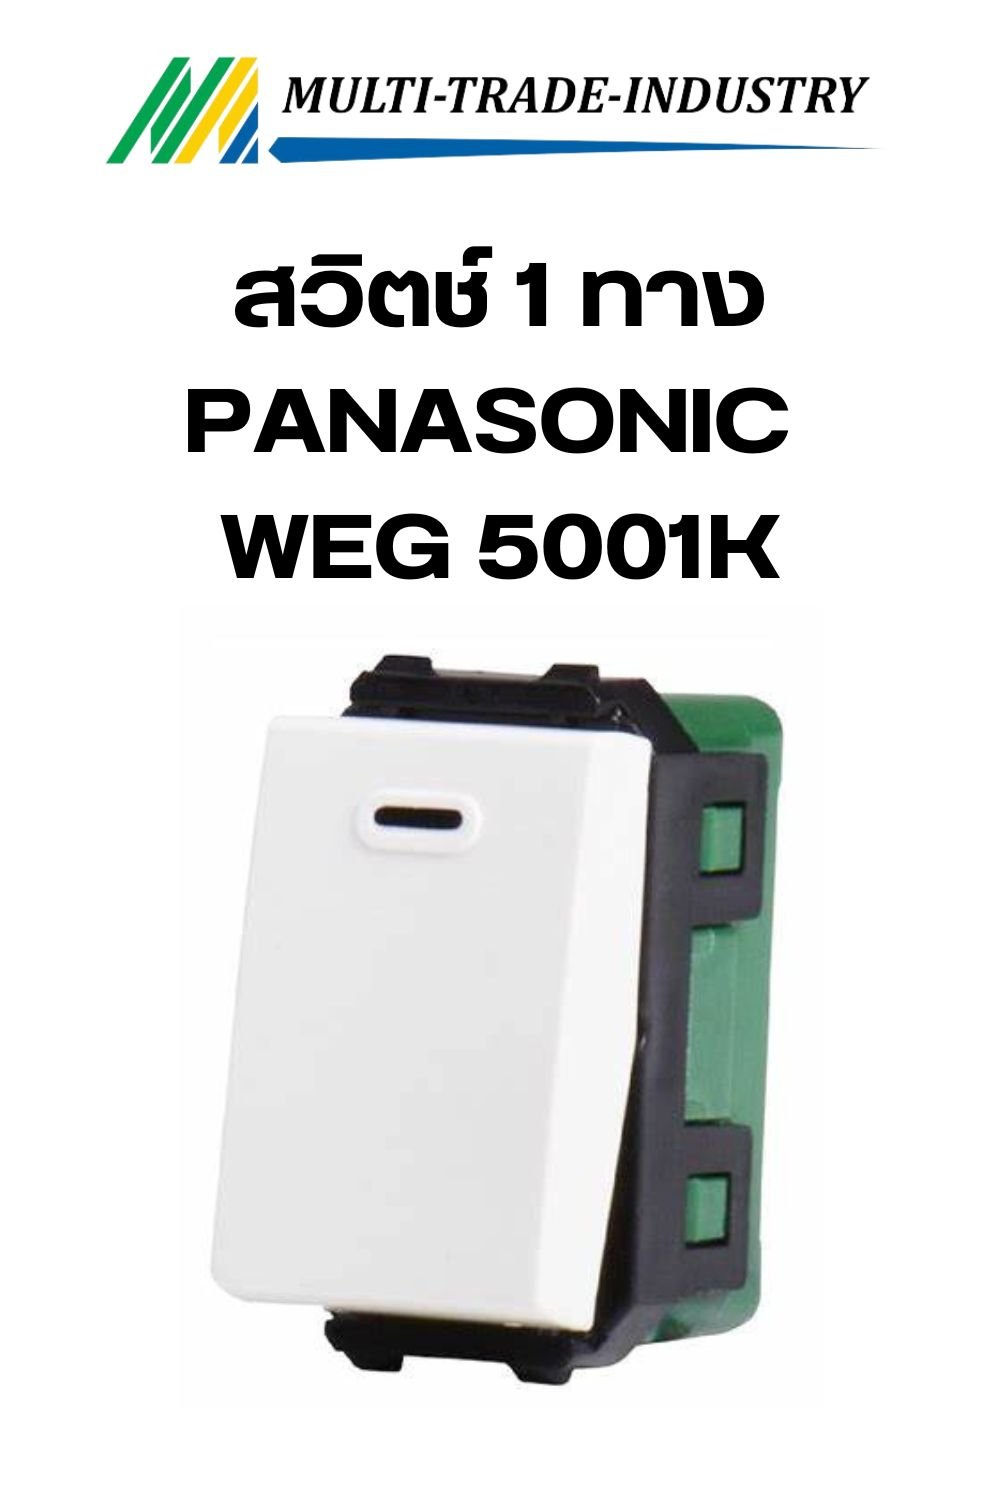 สวิตช์ 1 ทาง PANASONIC WEG 5001K ขนาด 1 ช่อง